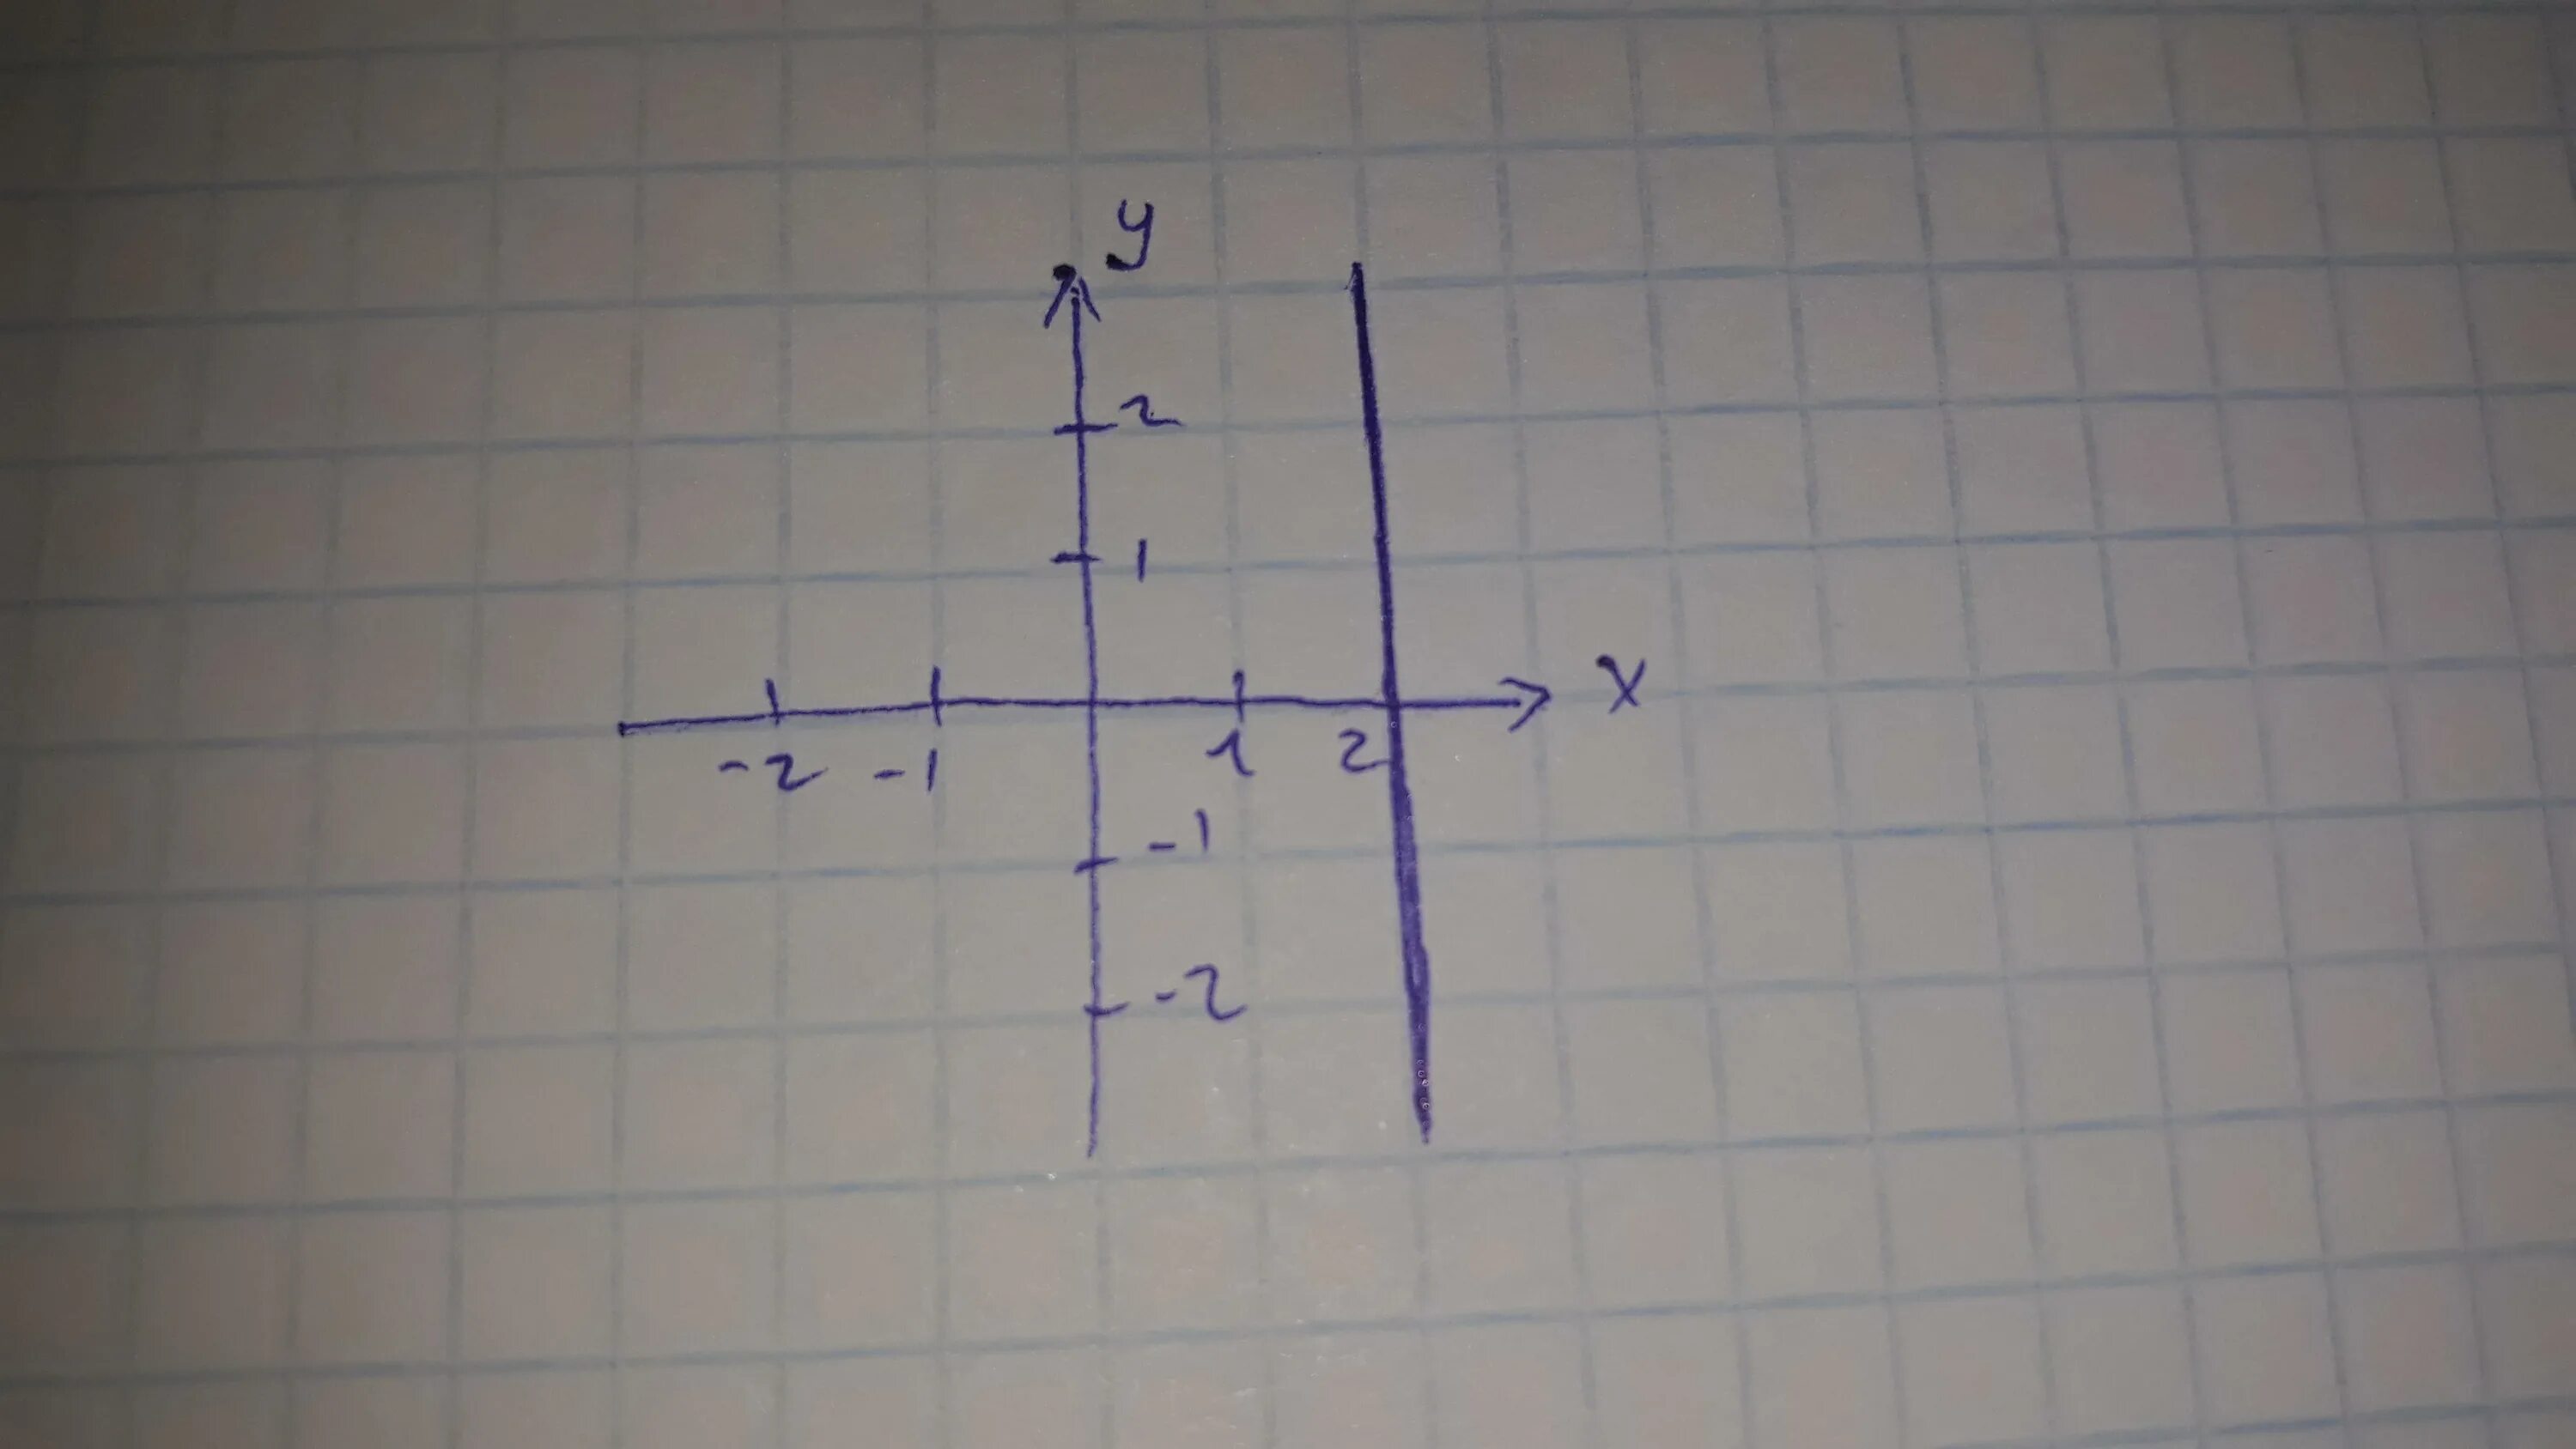 Прямая 3х у 1 0. Изобразить на координатной плоскости. Изобразить на координатной плоскости ( x-2y) (x-7). Изобрази на координатной плоскости точки. Изобразите на координатной плоскости точки.